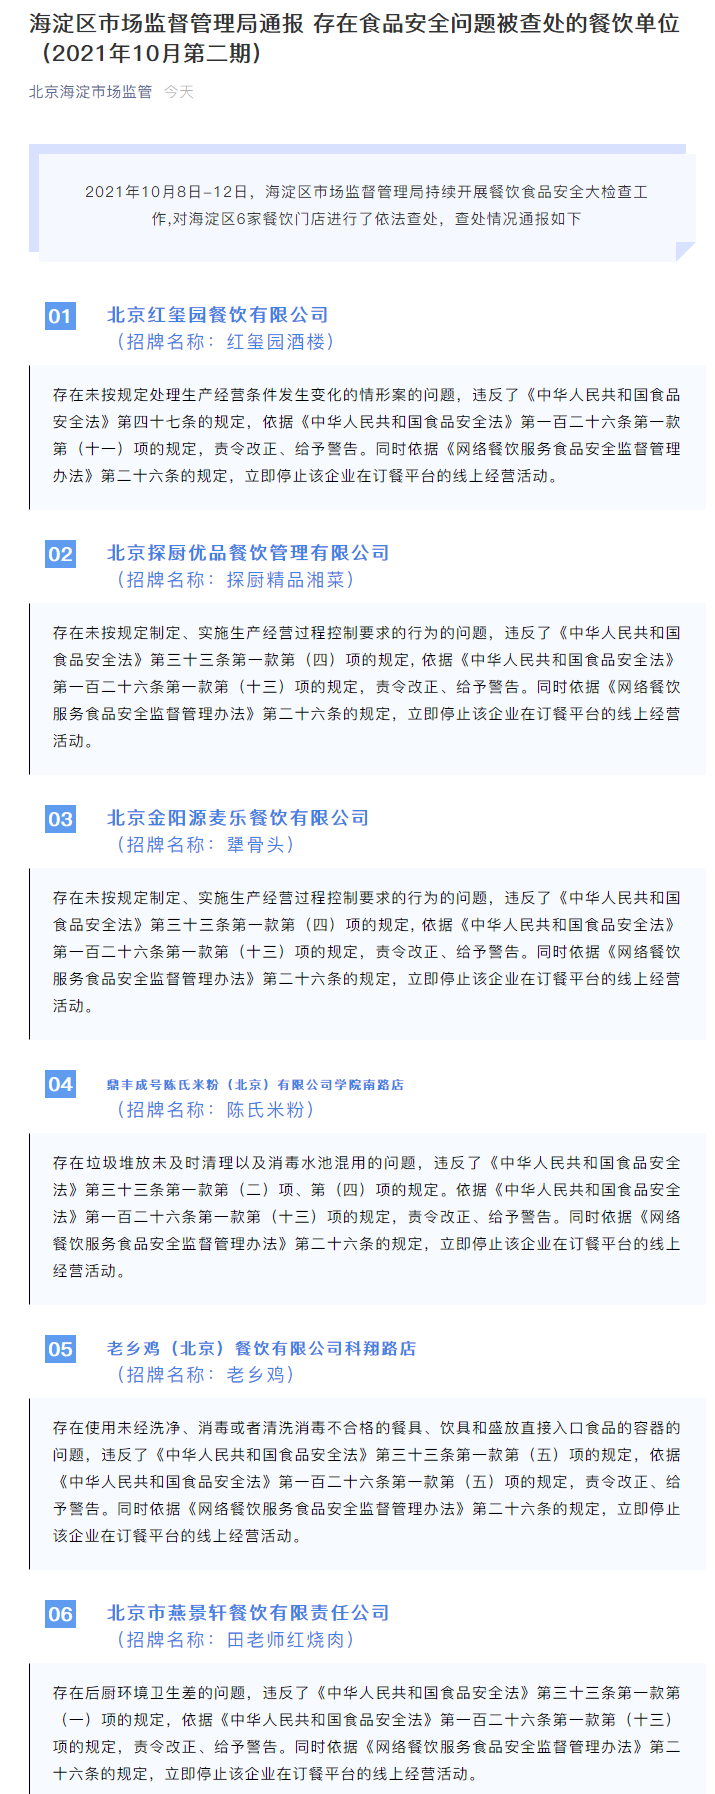 北京海淀通报新一批“问题餐饮店” 犟骨头、田老师红烧肉等上榜